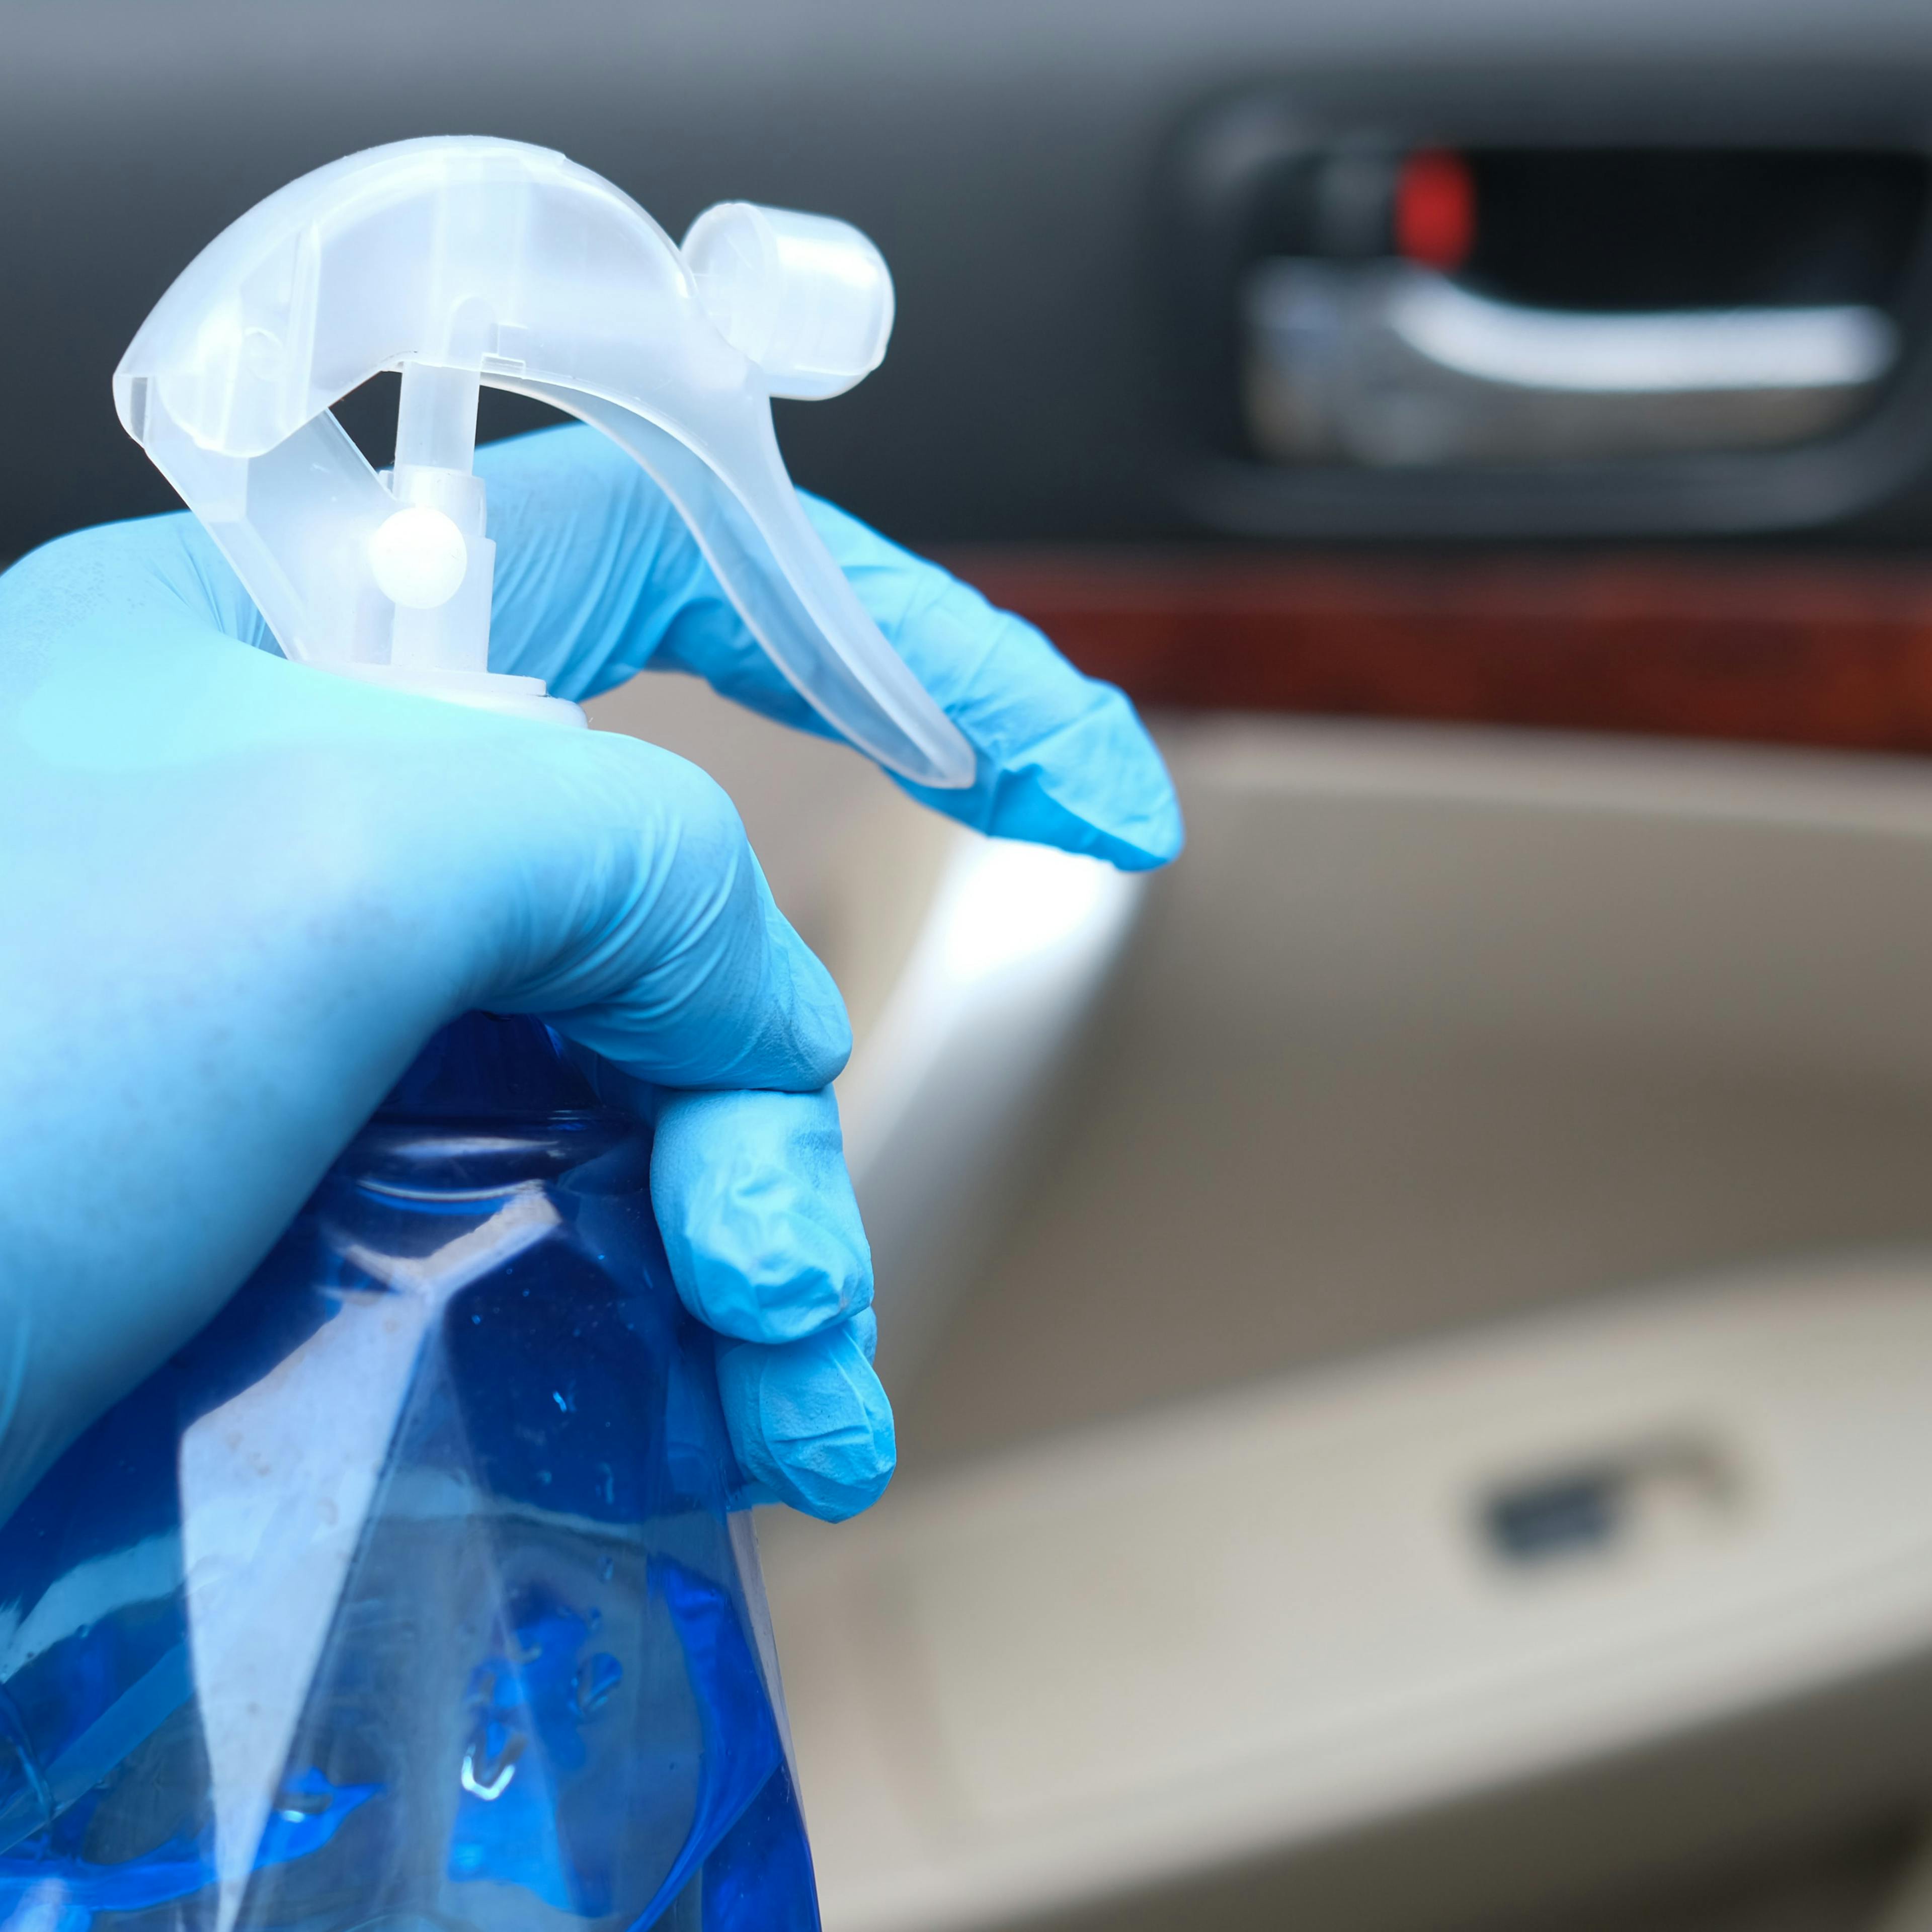 Detailaufnahme einer Hand mit blauem Handschuh und blauer Sprühflasche beim Reinigen eines Auto-Innenraumes